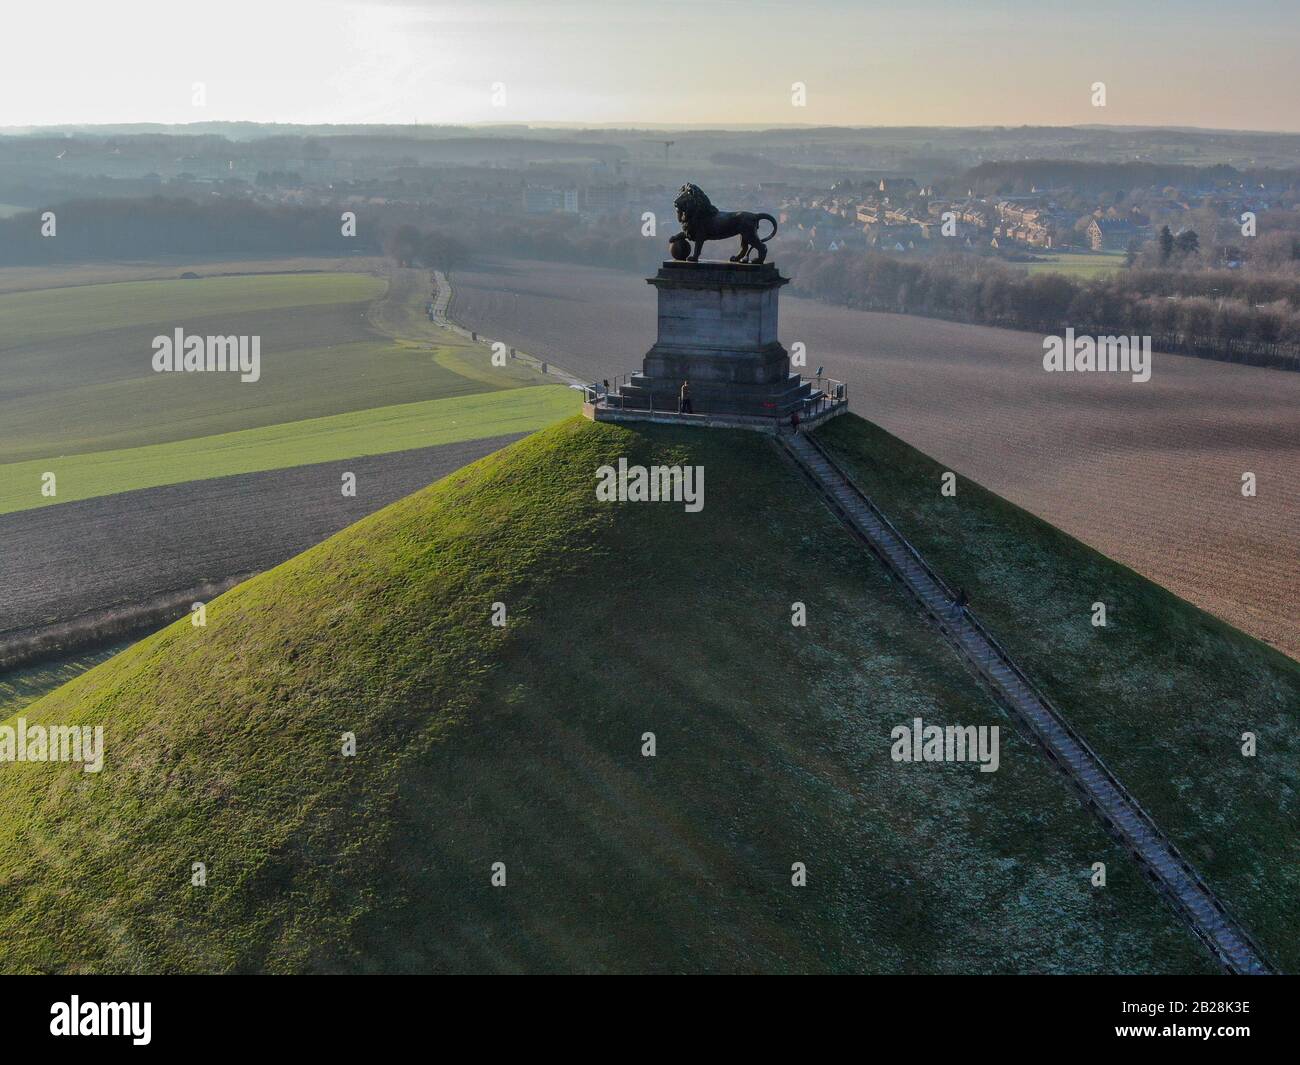 Luftbild des Lion's Mound mit Bauernland. Der riesige Butte Du Lion auf dem Schlachtfeld von Waterloo, auf dem Napoleon starb. Belgien. Stockfoto